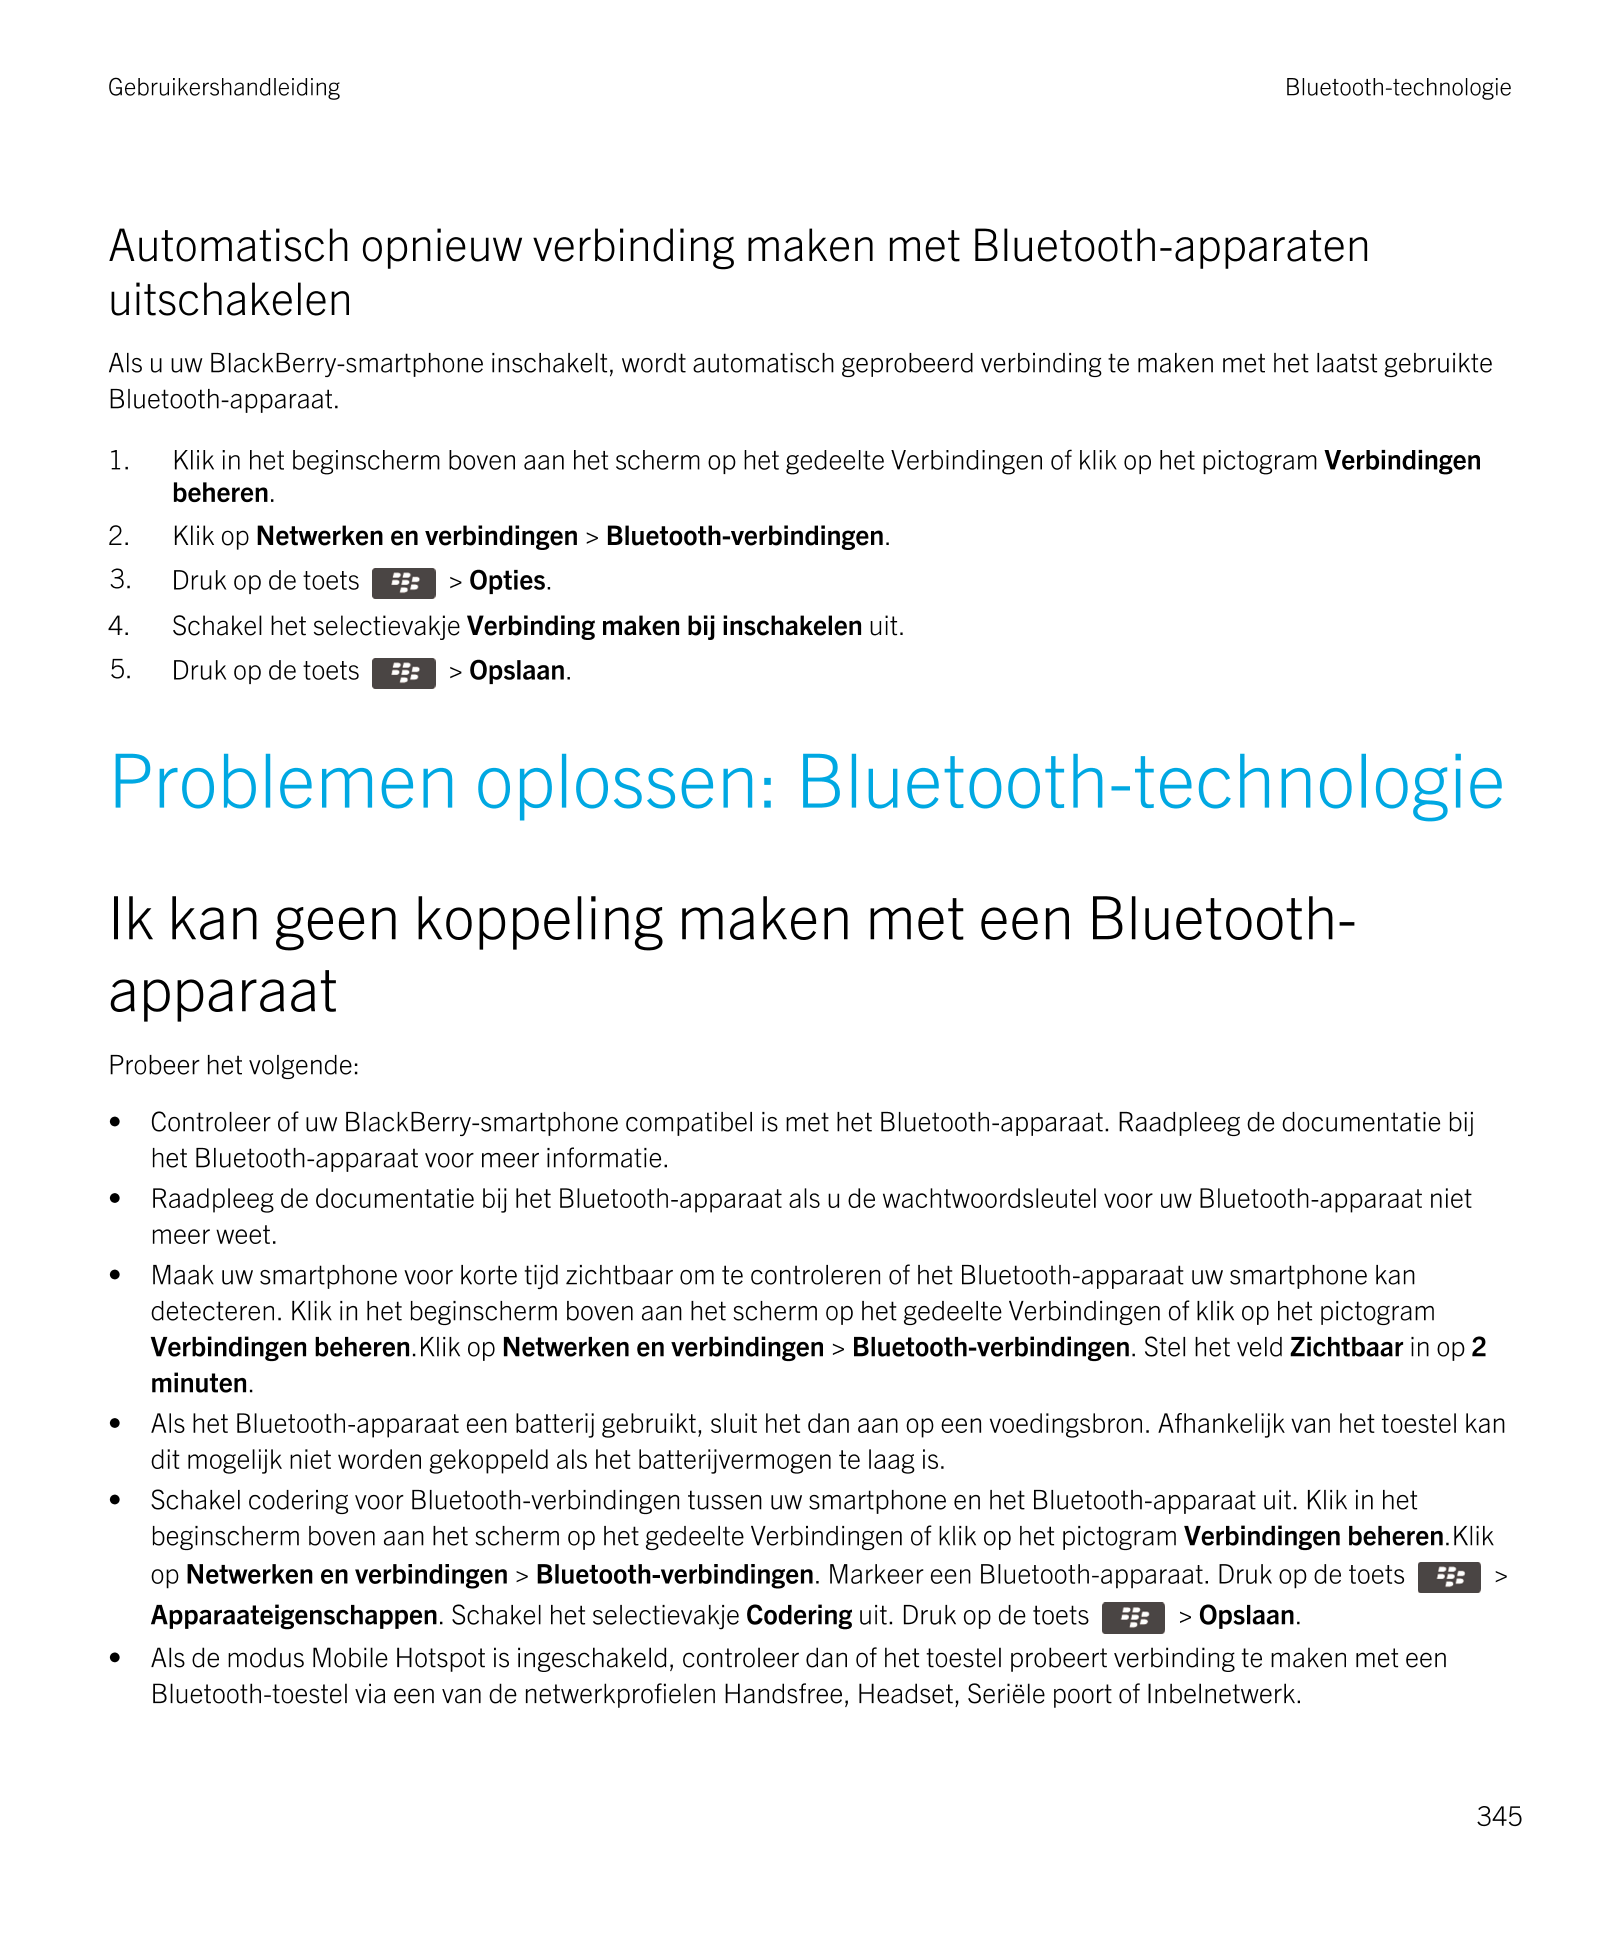 Gebruikershandleiding Bluetooth-technologie
Automatisch opnieuw verbinding maken met  Bluetooth-apparaten 
uitschakelen
Als u uw